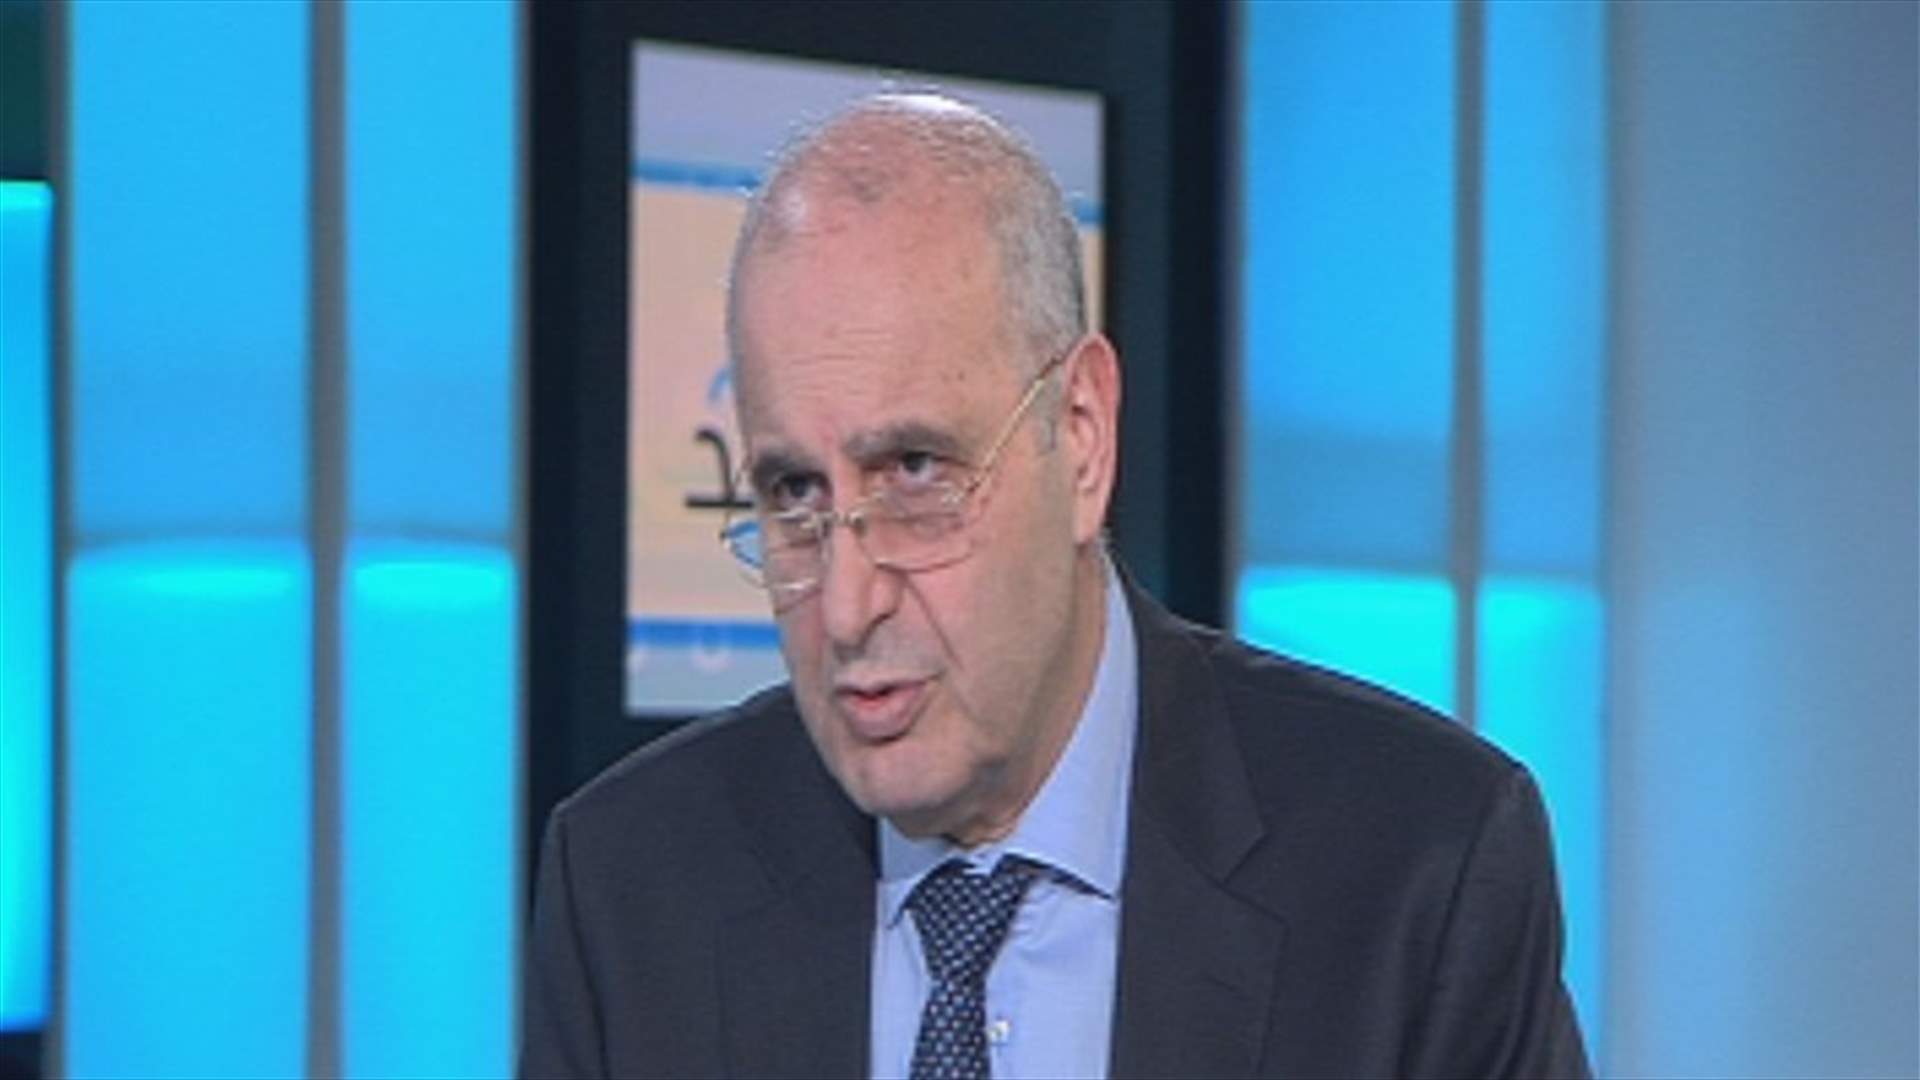 عراجي: هناك ازمة ثقة في لبنان والحل بالحوار وبالتعاون مع الوزارات المعنية ومصرف لبنان